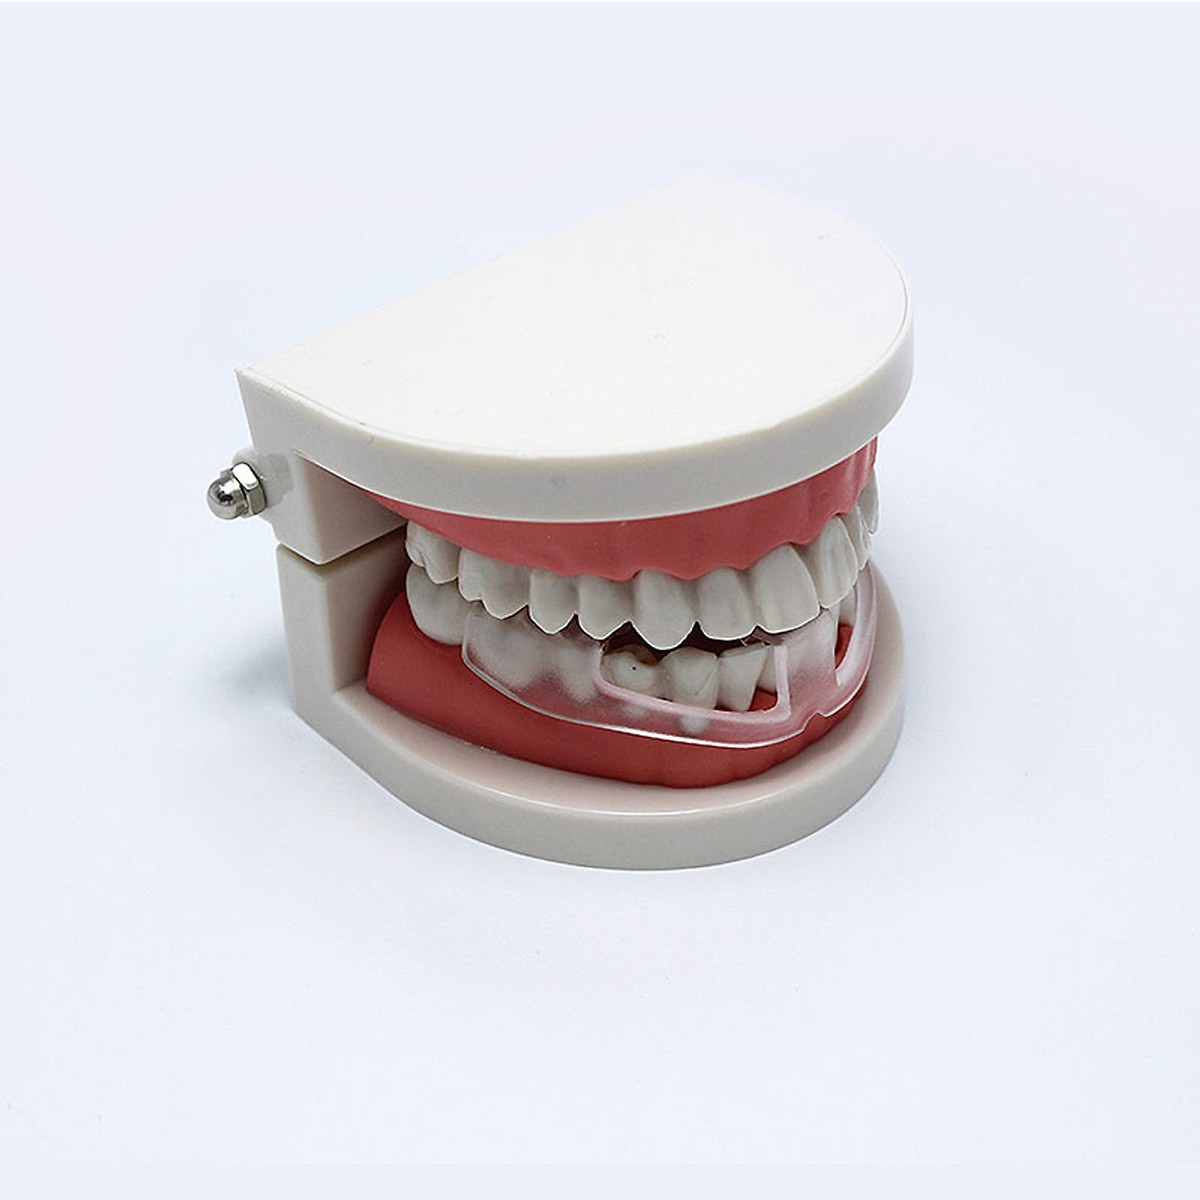 MÁNG DỤNG CỤ CHO NGƯỜI NGHIẾN RĂNG chăm sóc răng miệng, bảo vệ răng,  (Loại bỏ tật nghiến răng khi ngủ )